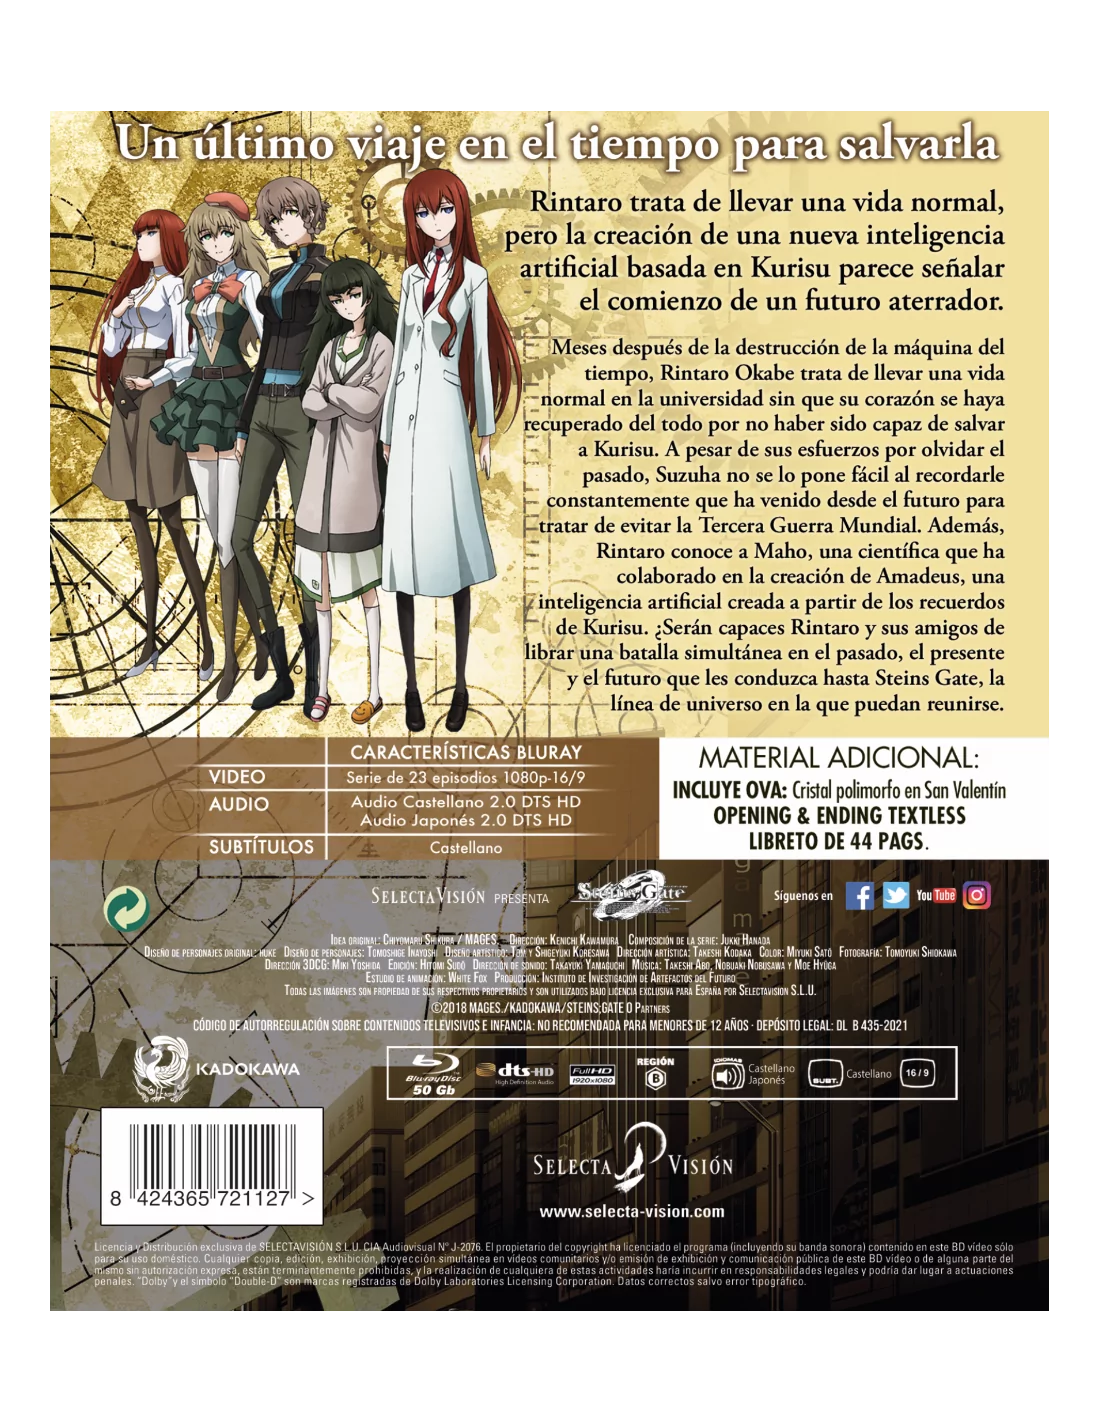 Steins Gate Zero Episoidos 1 A 23 + Ova Bluray Edición Coleccionistas.